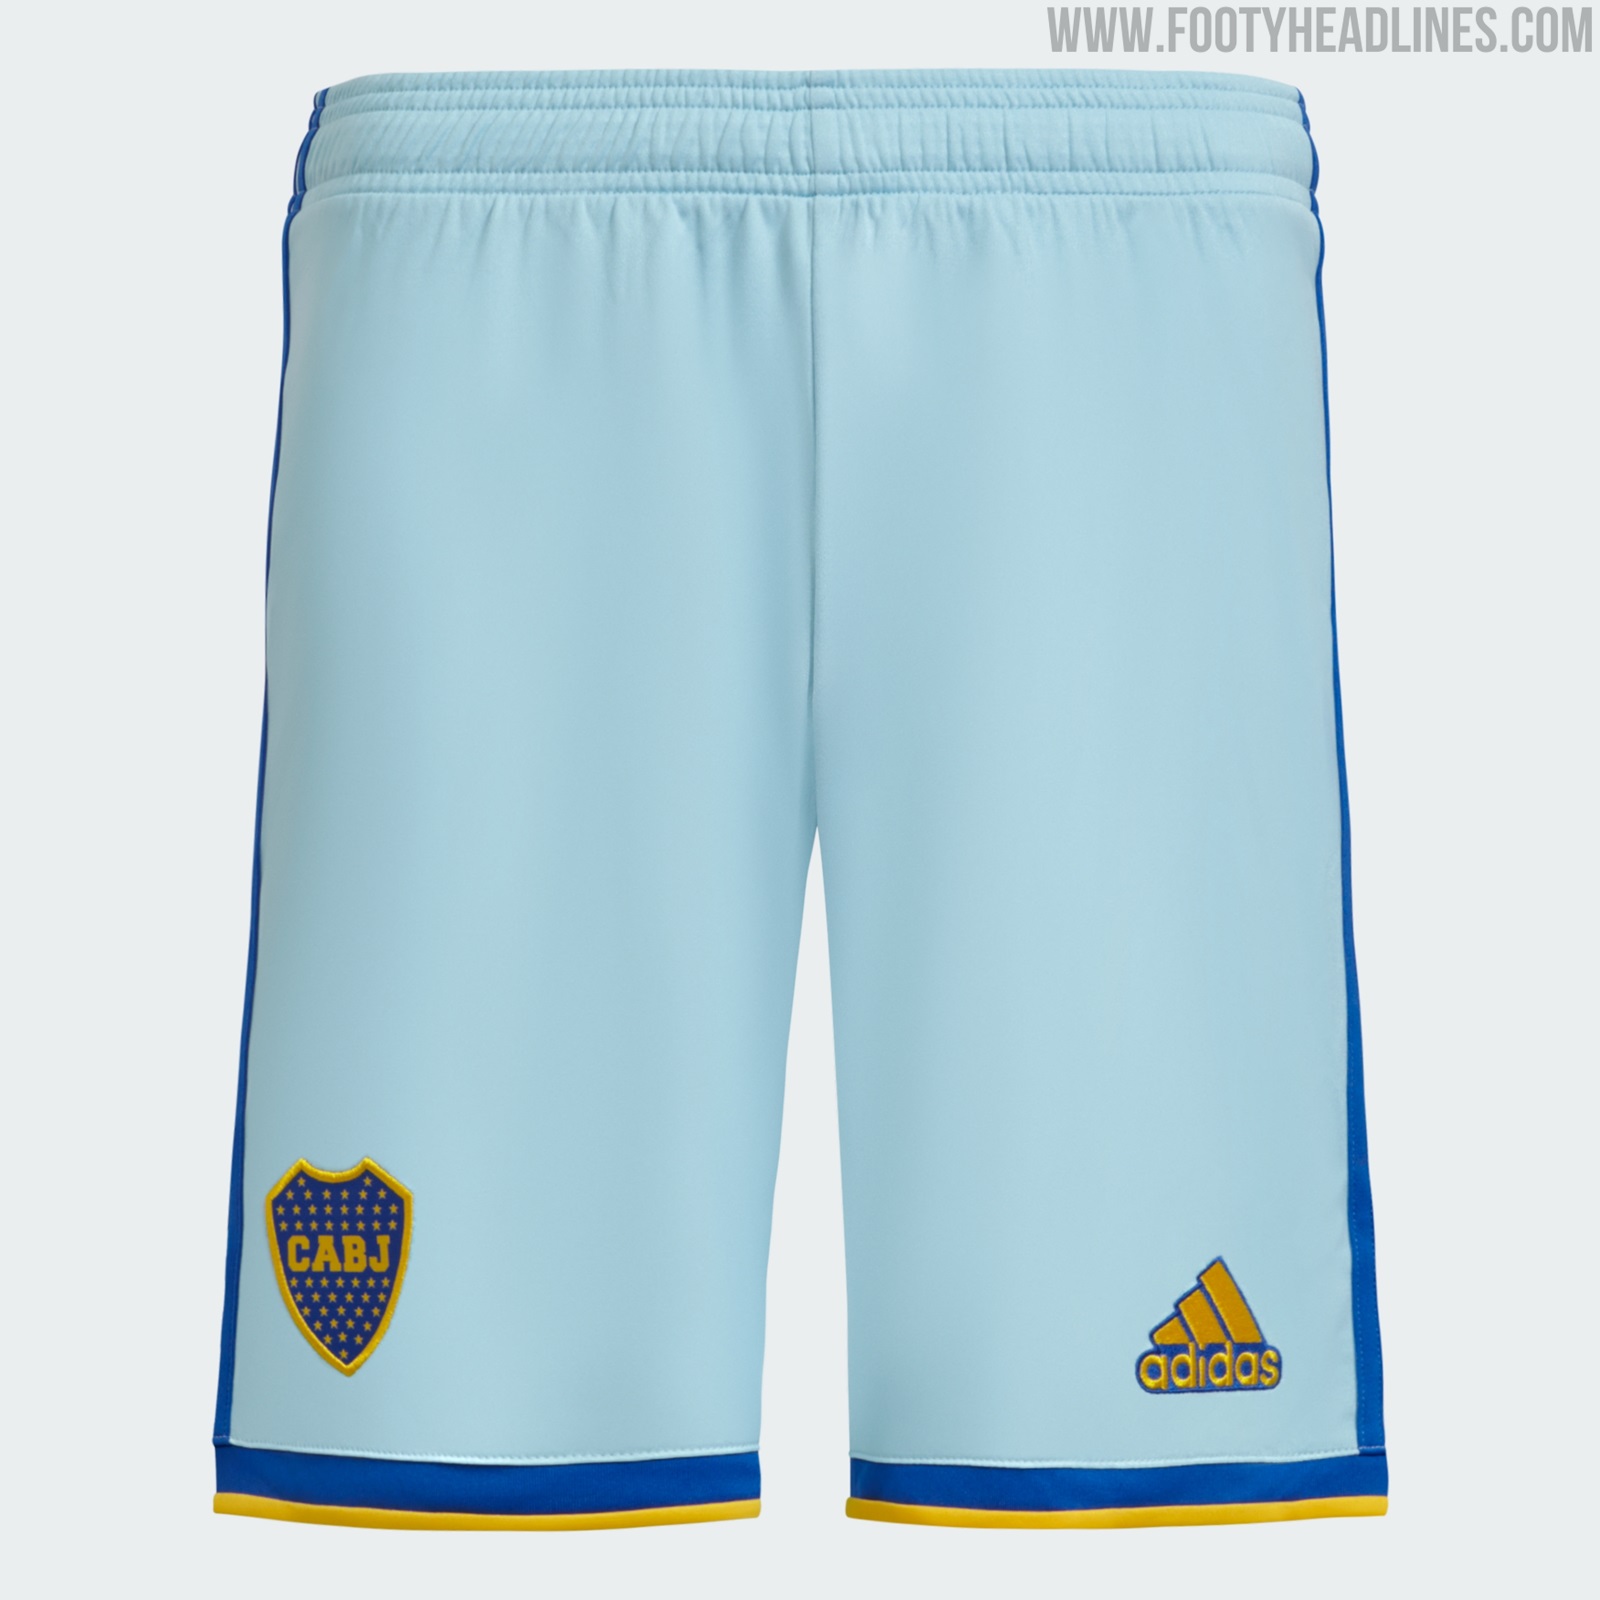 Boca Juniors 2023 Third Kit Released - Footy Headlines